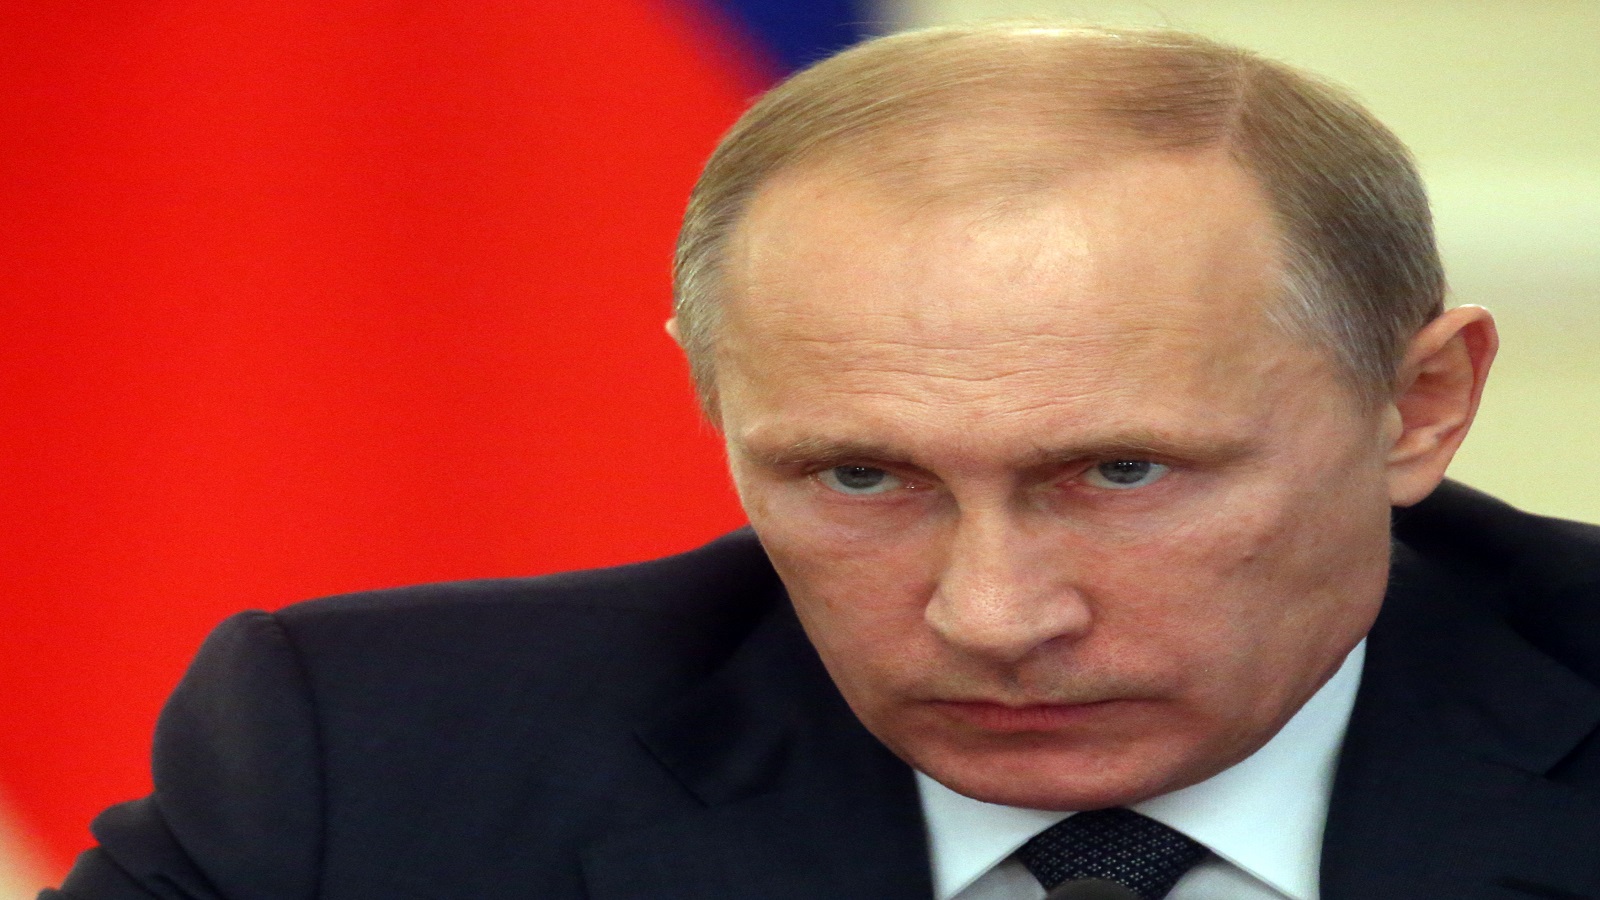 بوتين يؤيّد تقييد عمل الإعلام الأجنبي في روسيا